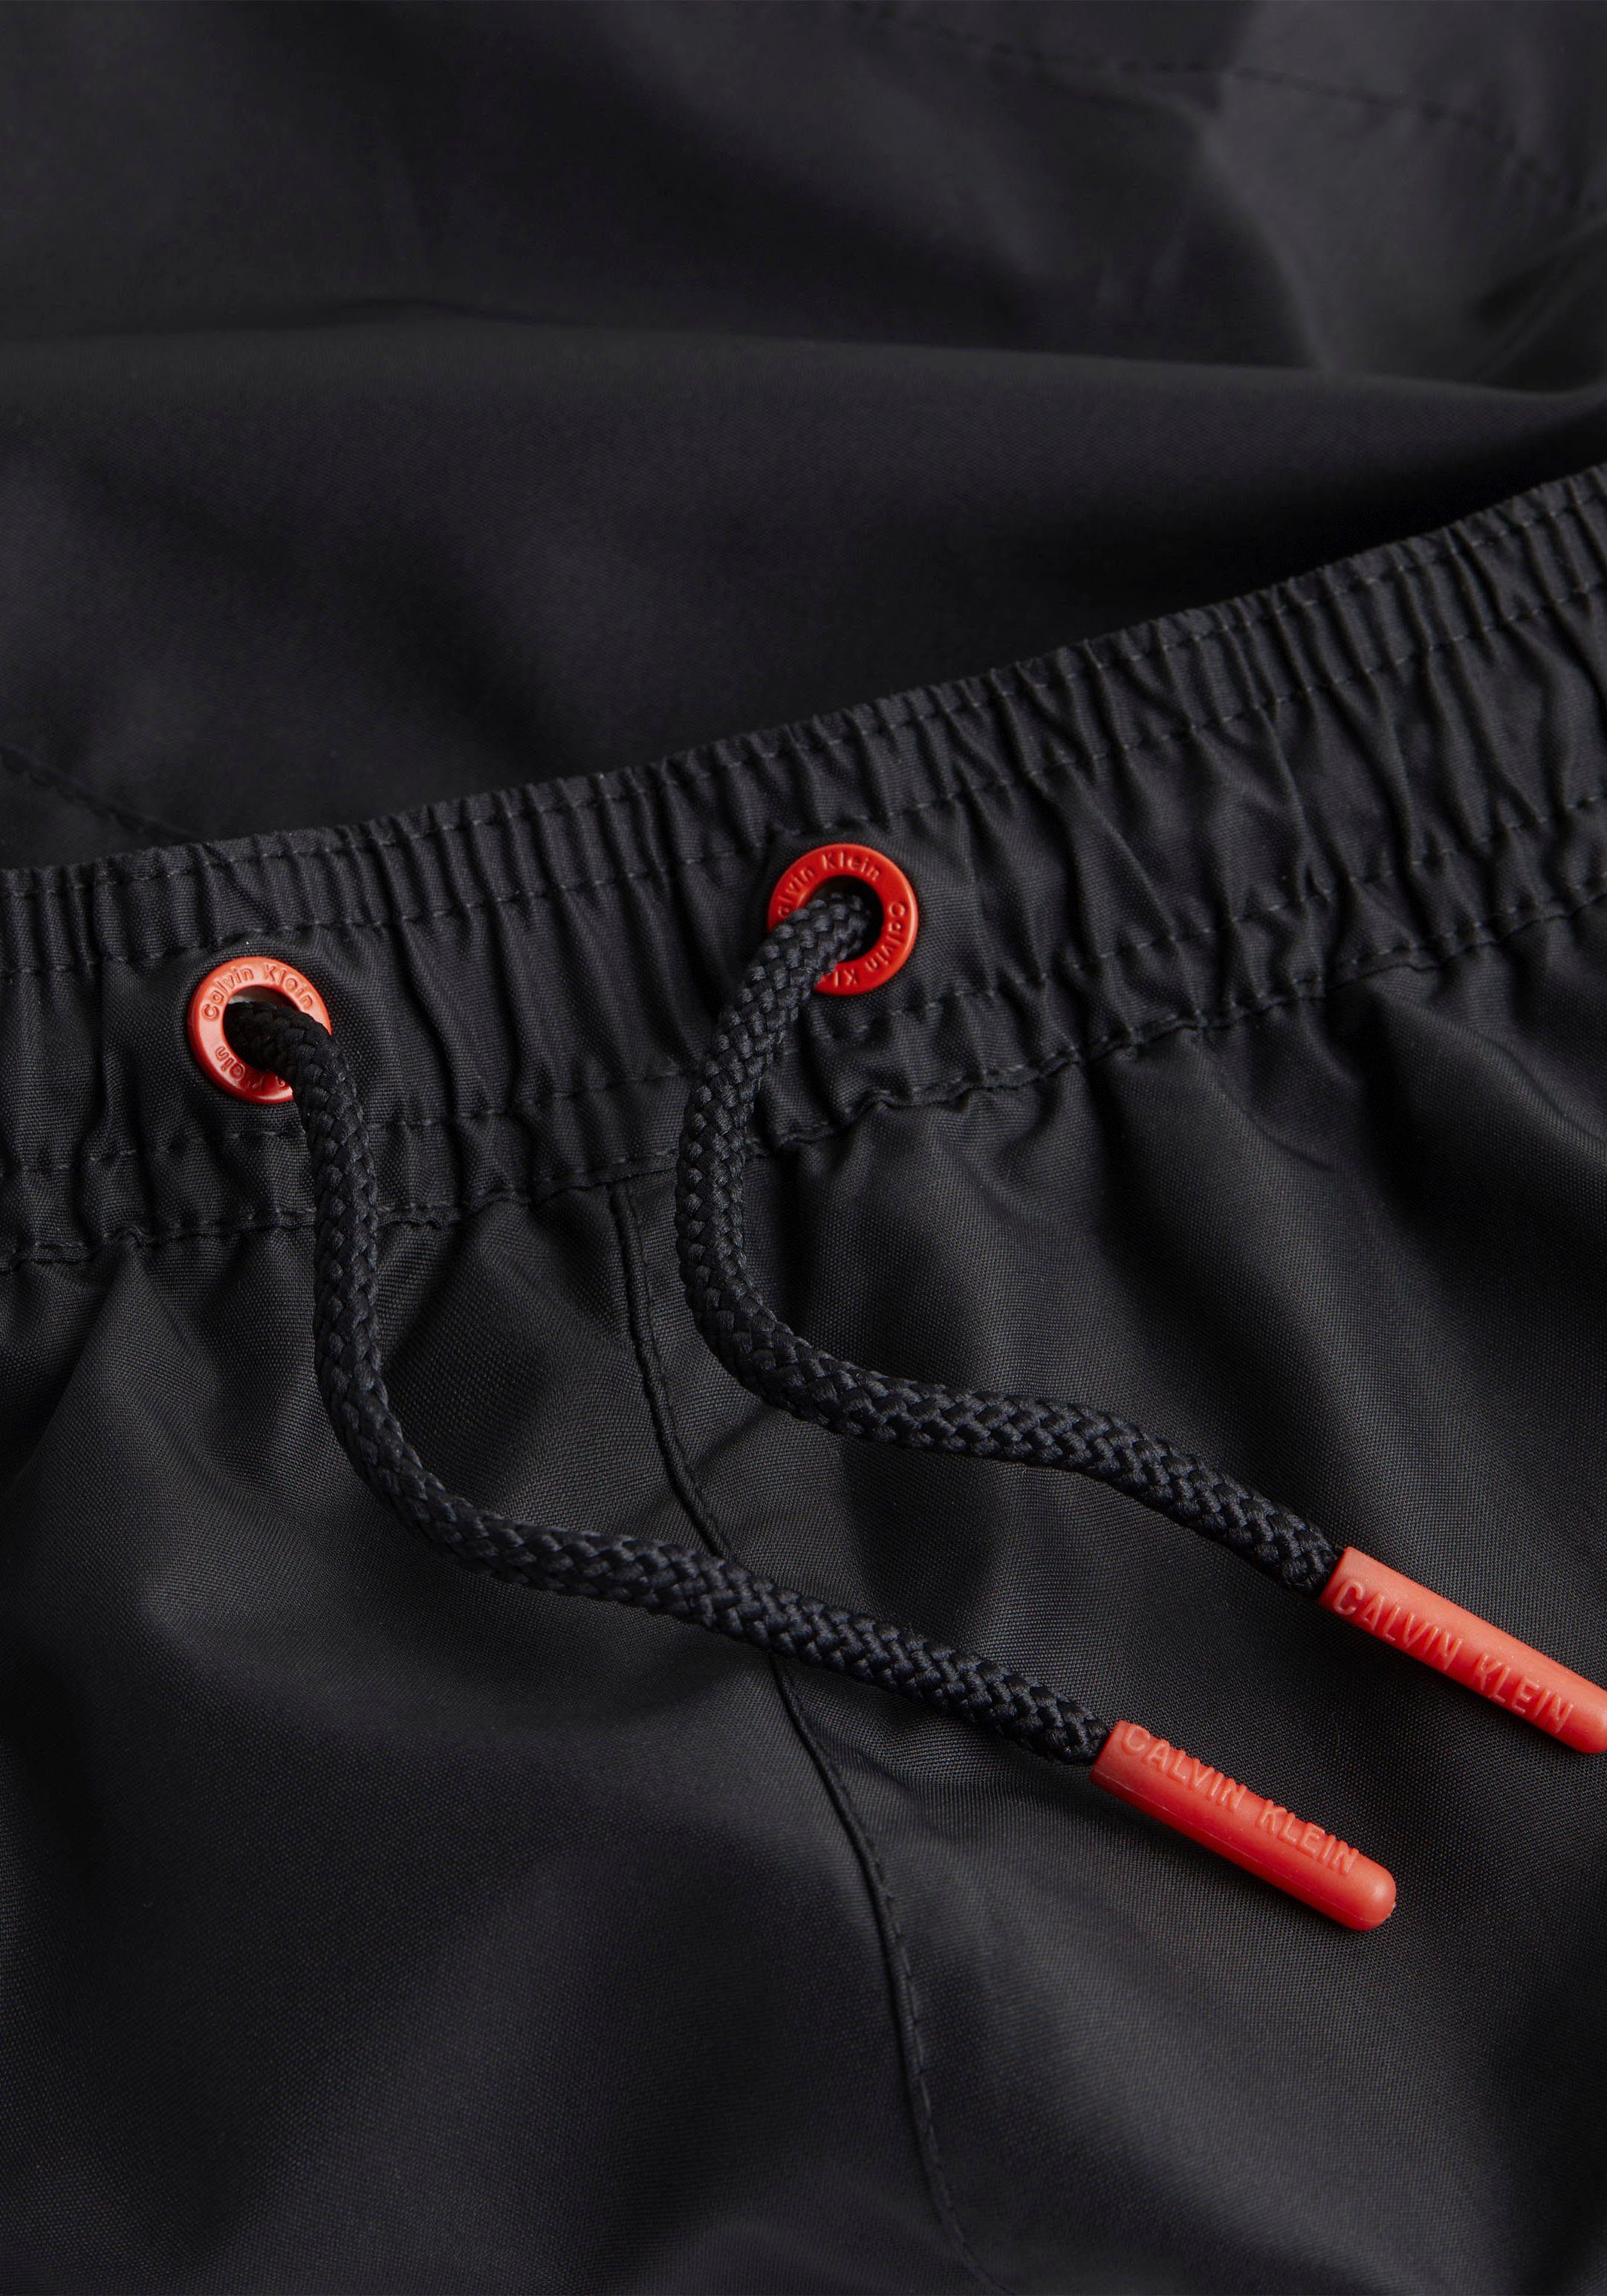 Calvin Klein Swimwear Schriftzug DRAWSTRING Pvh-Black Badeshorts mit Calvin Klein MEDIUM